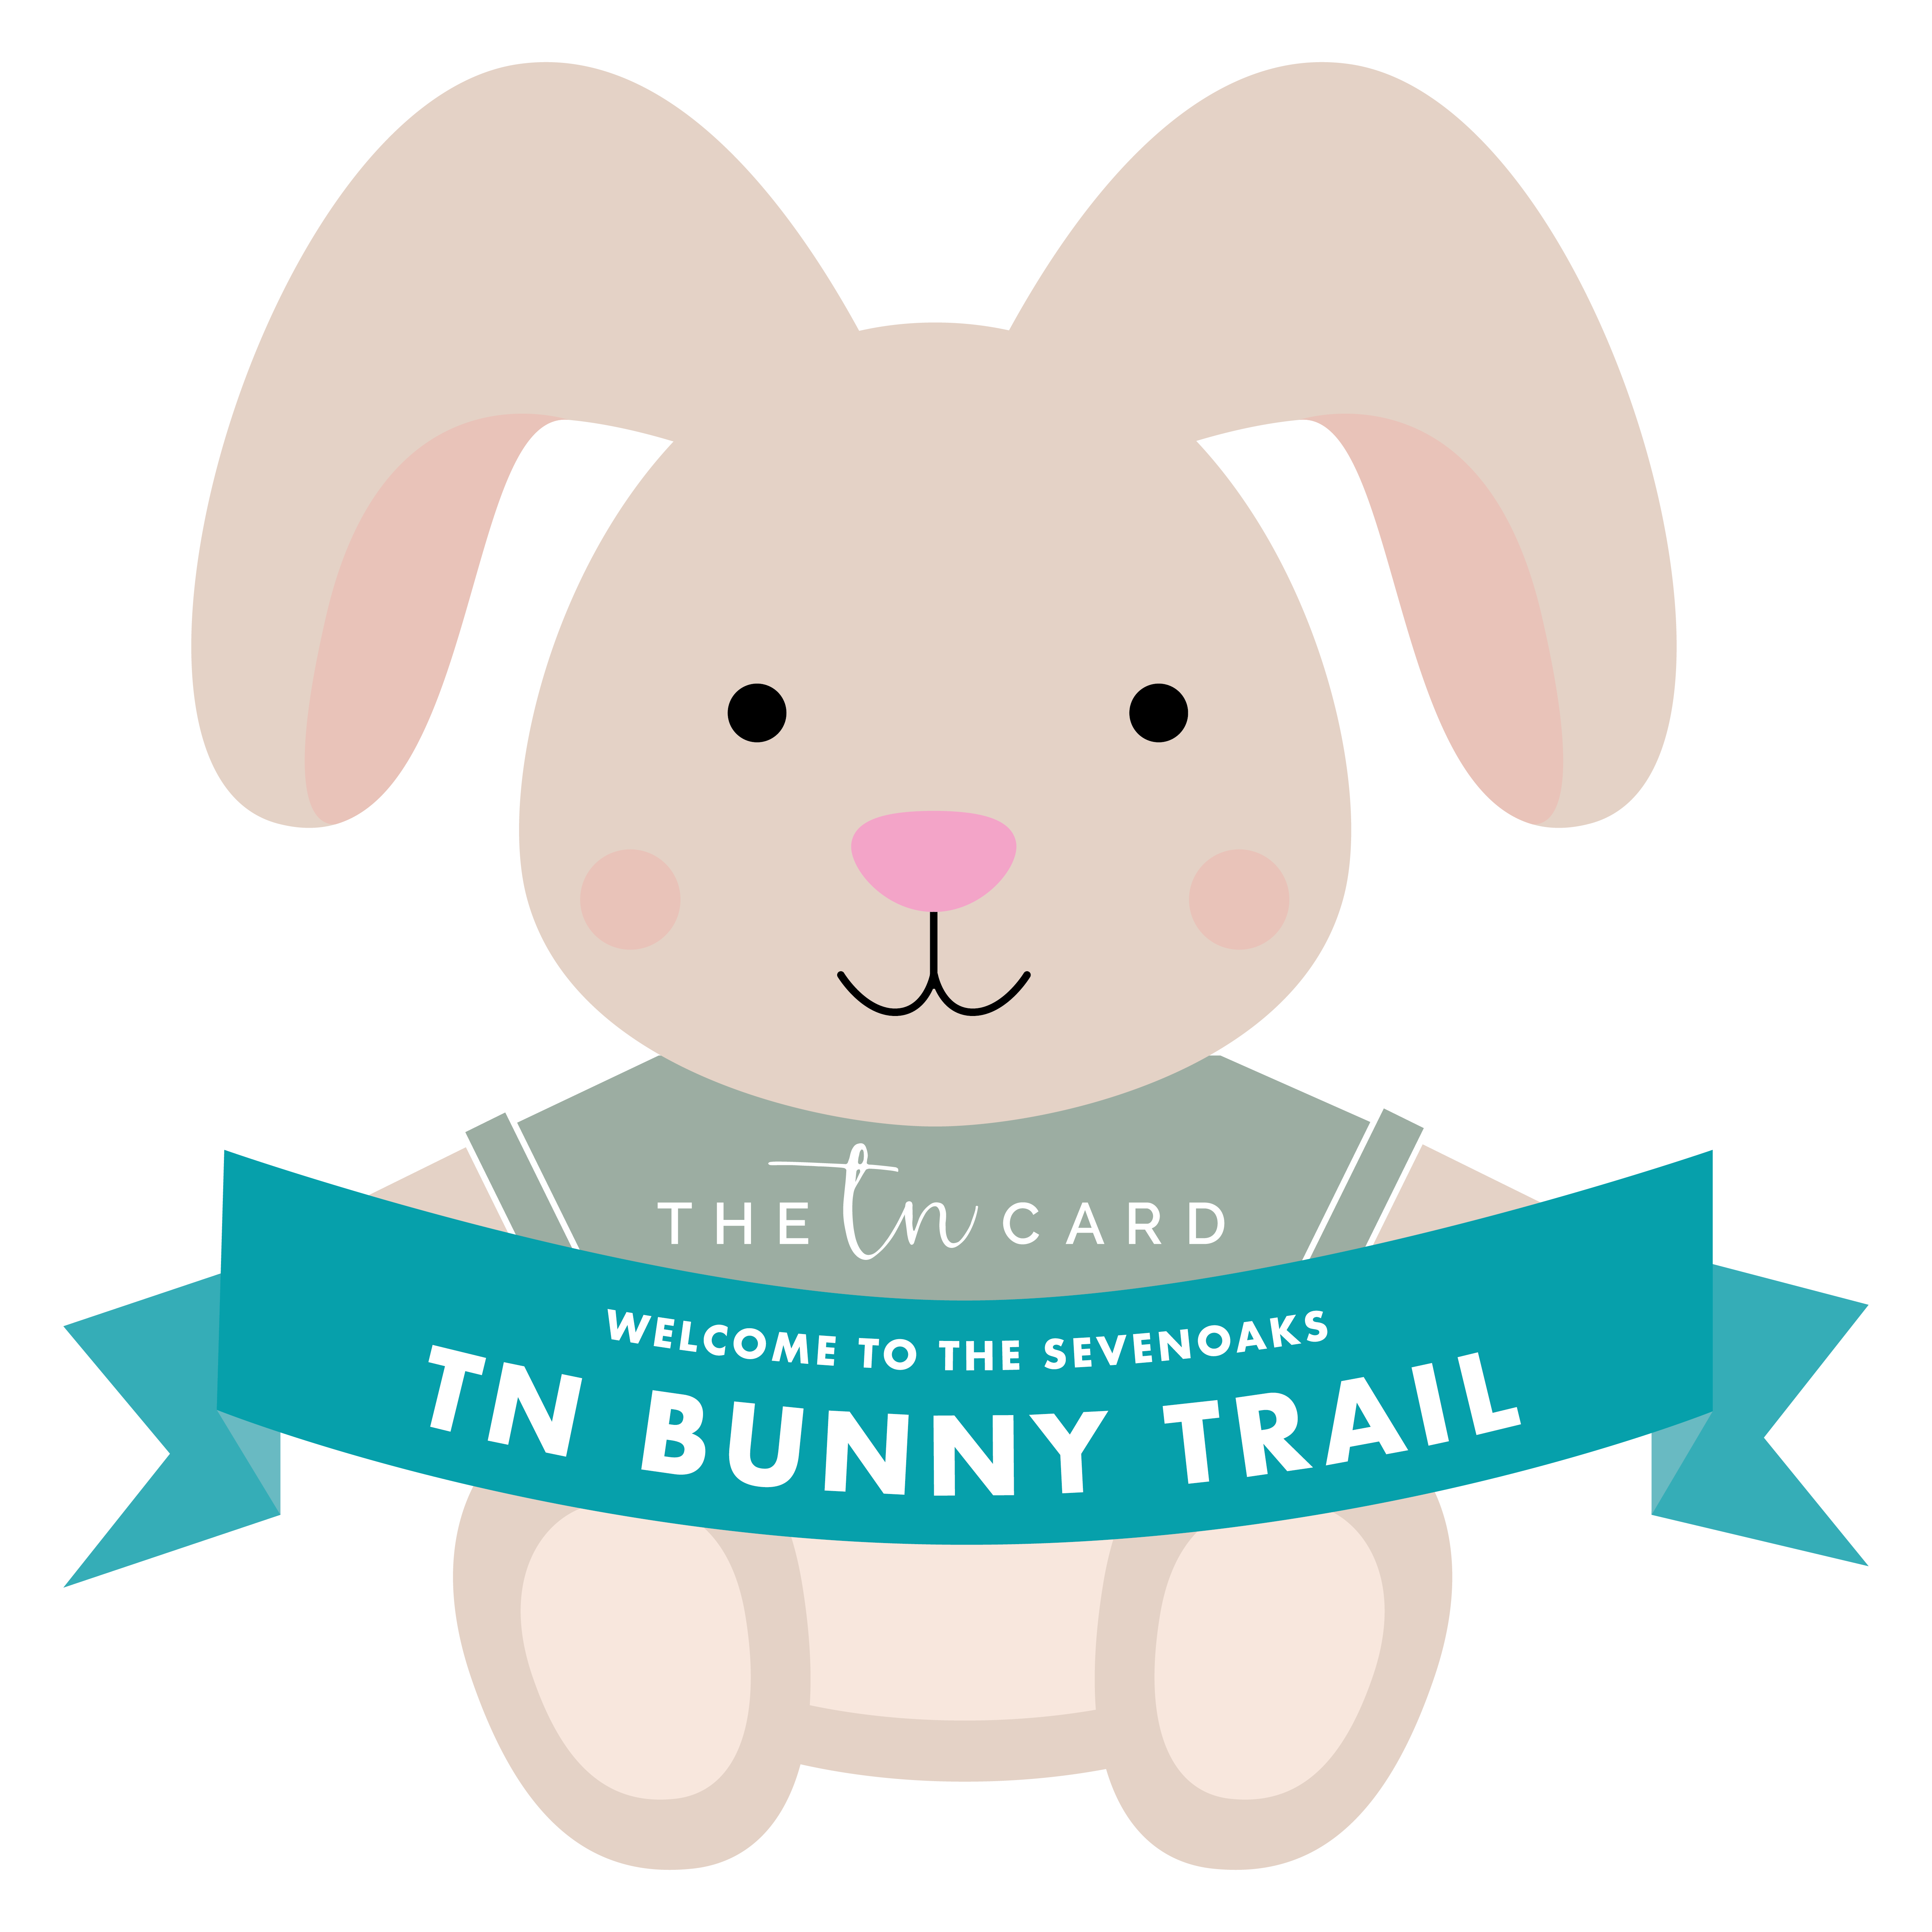 The TN Bunny Trail Sevenoaks logo